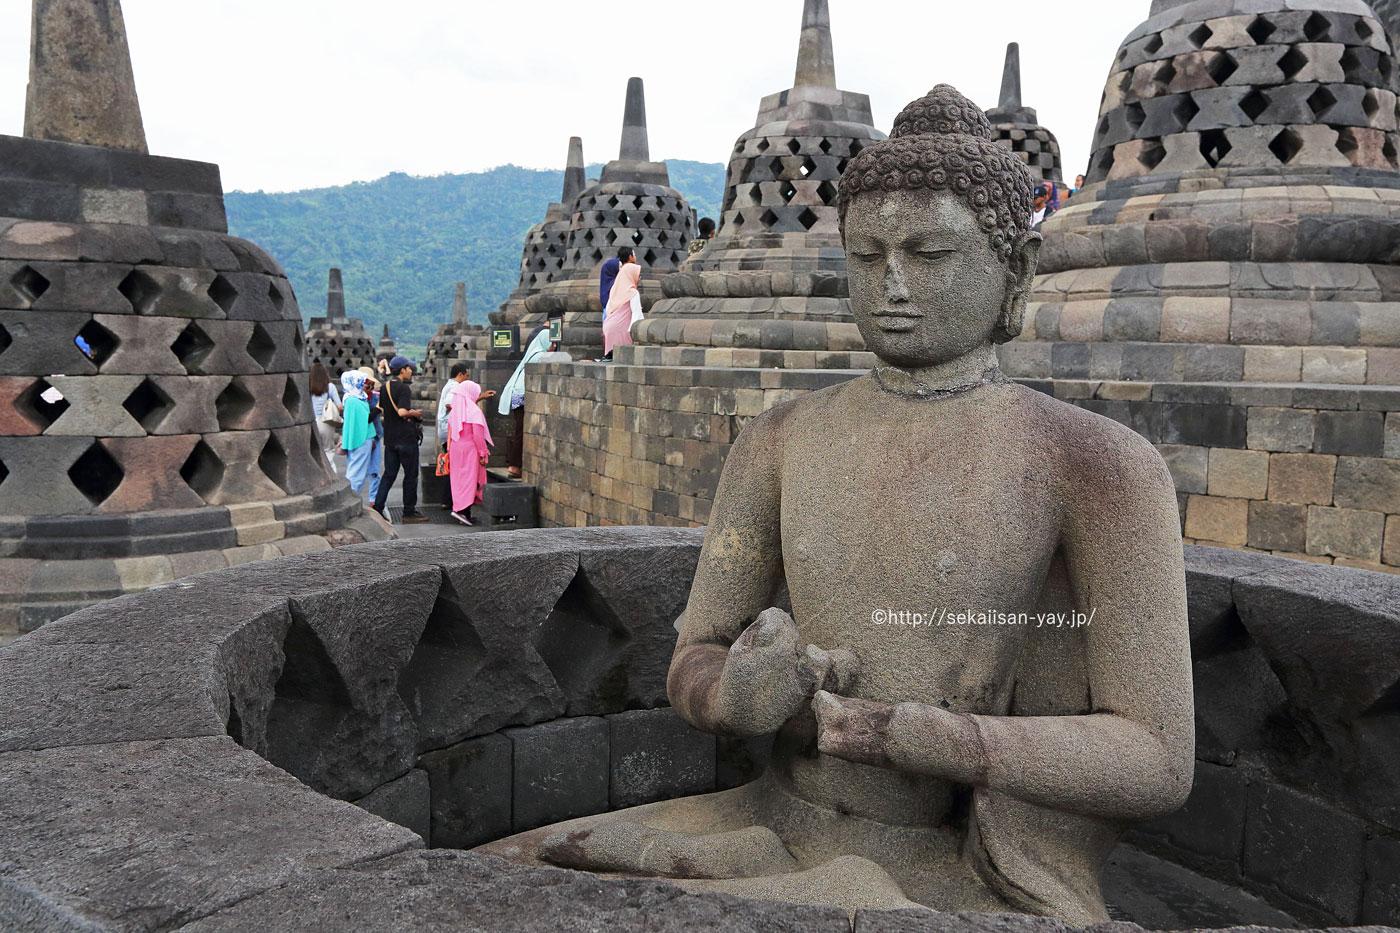 インドネシアの世界遺産「ボロブドゥールの仏教寺院群」